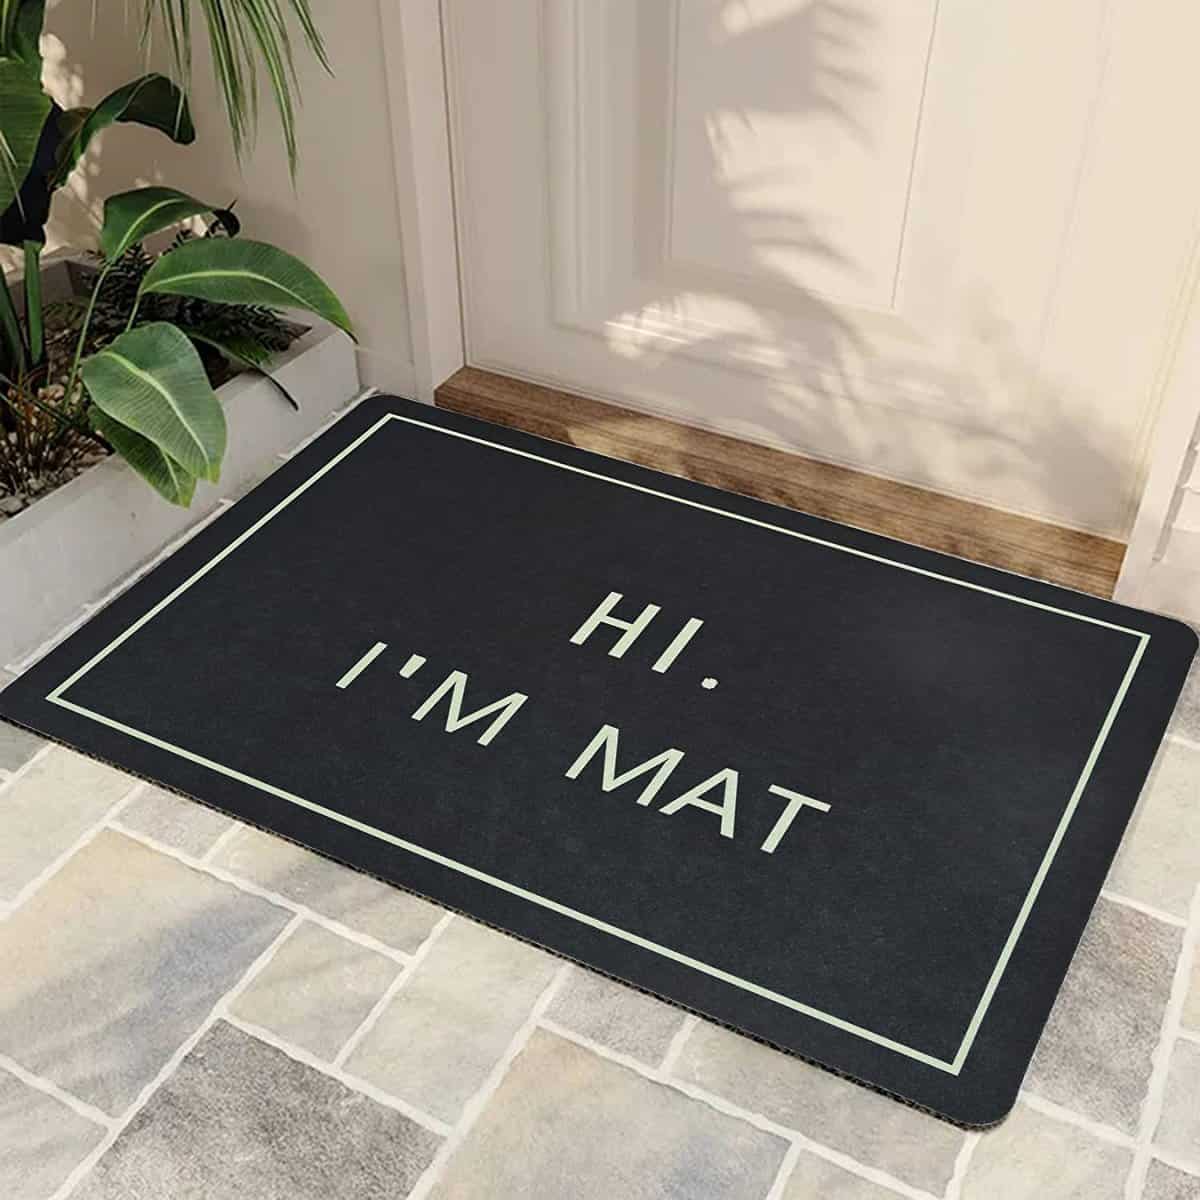 Hi I'm Mat